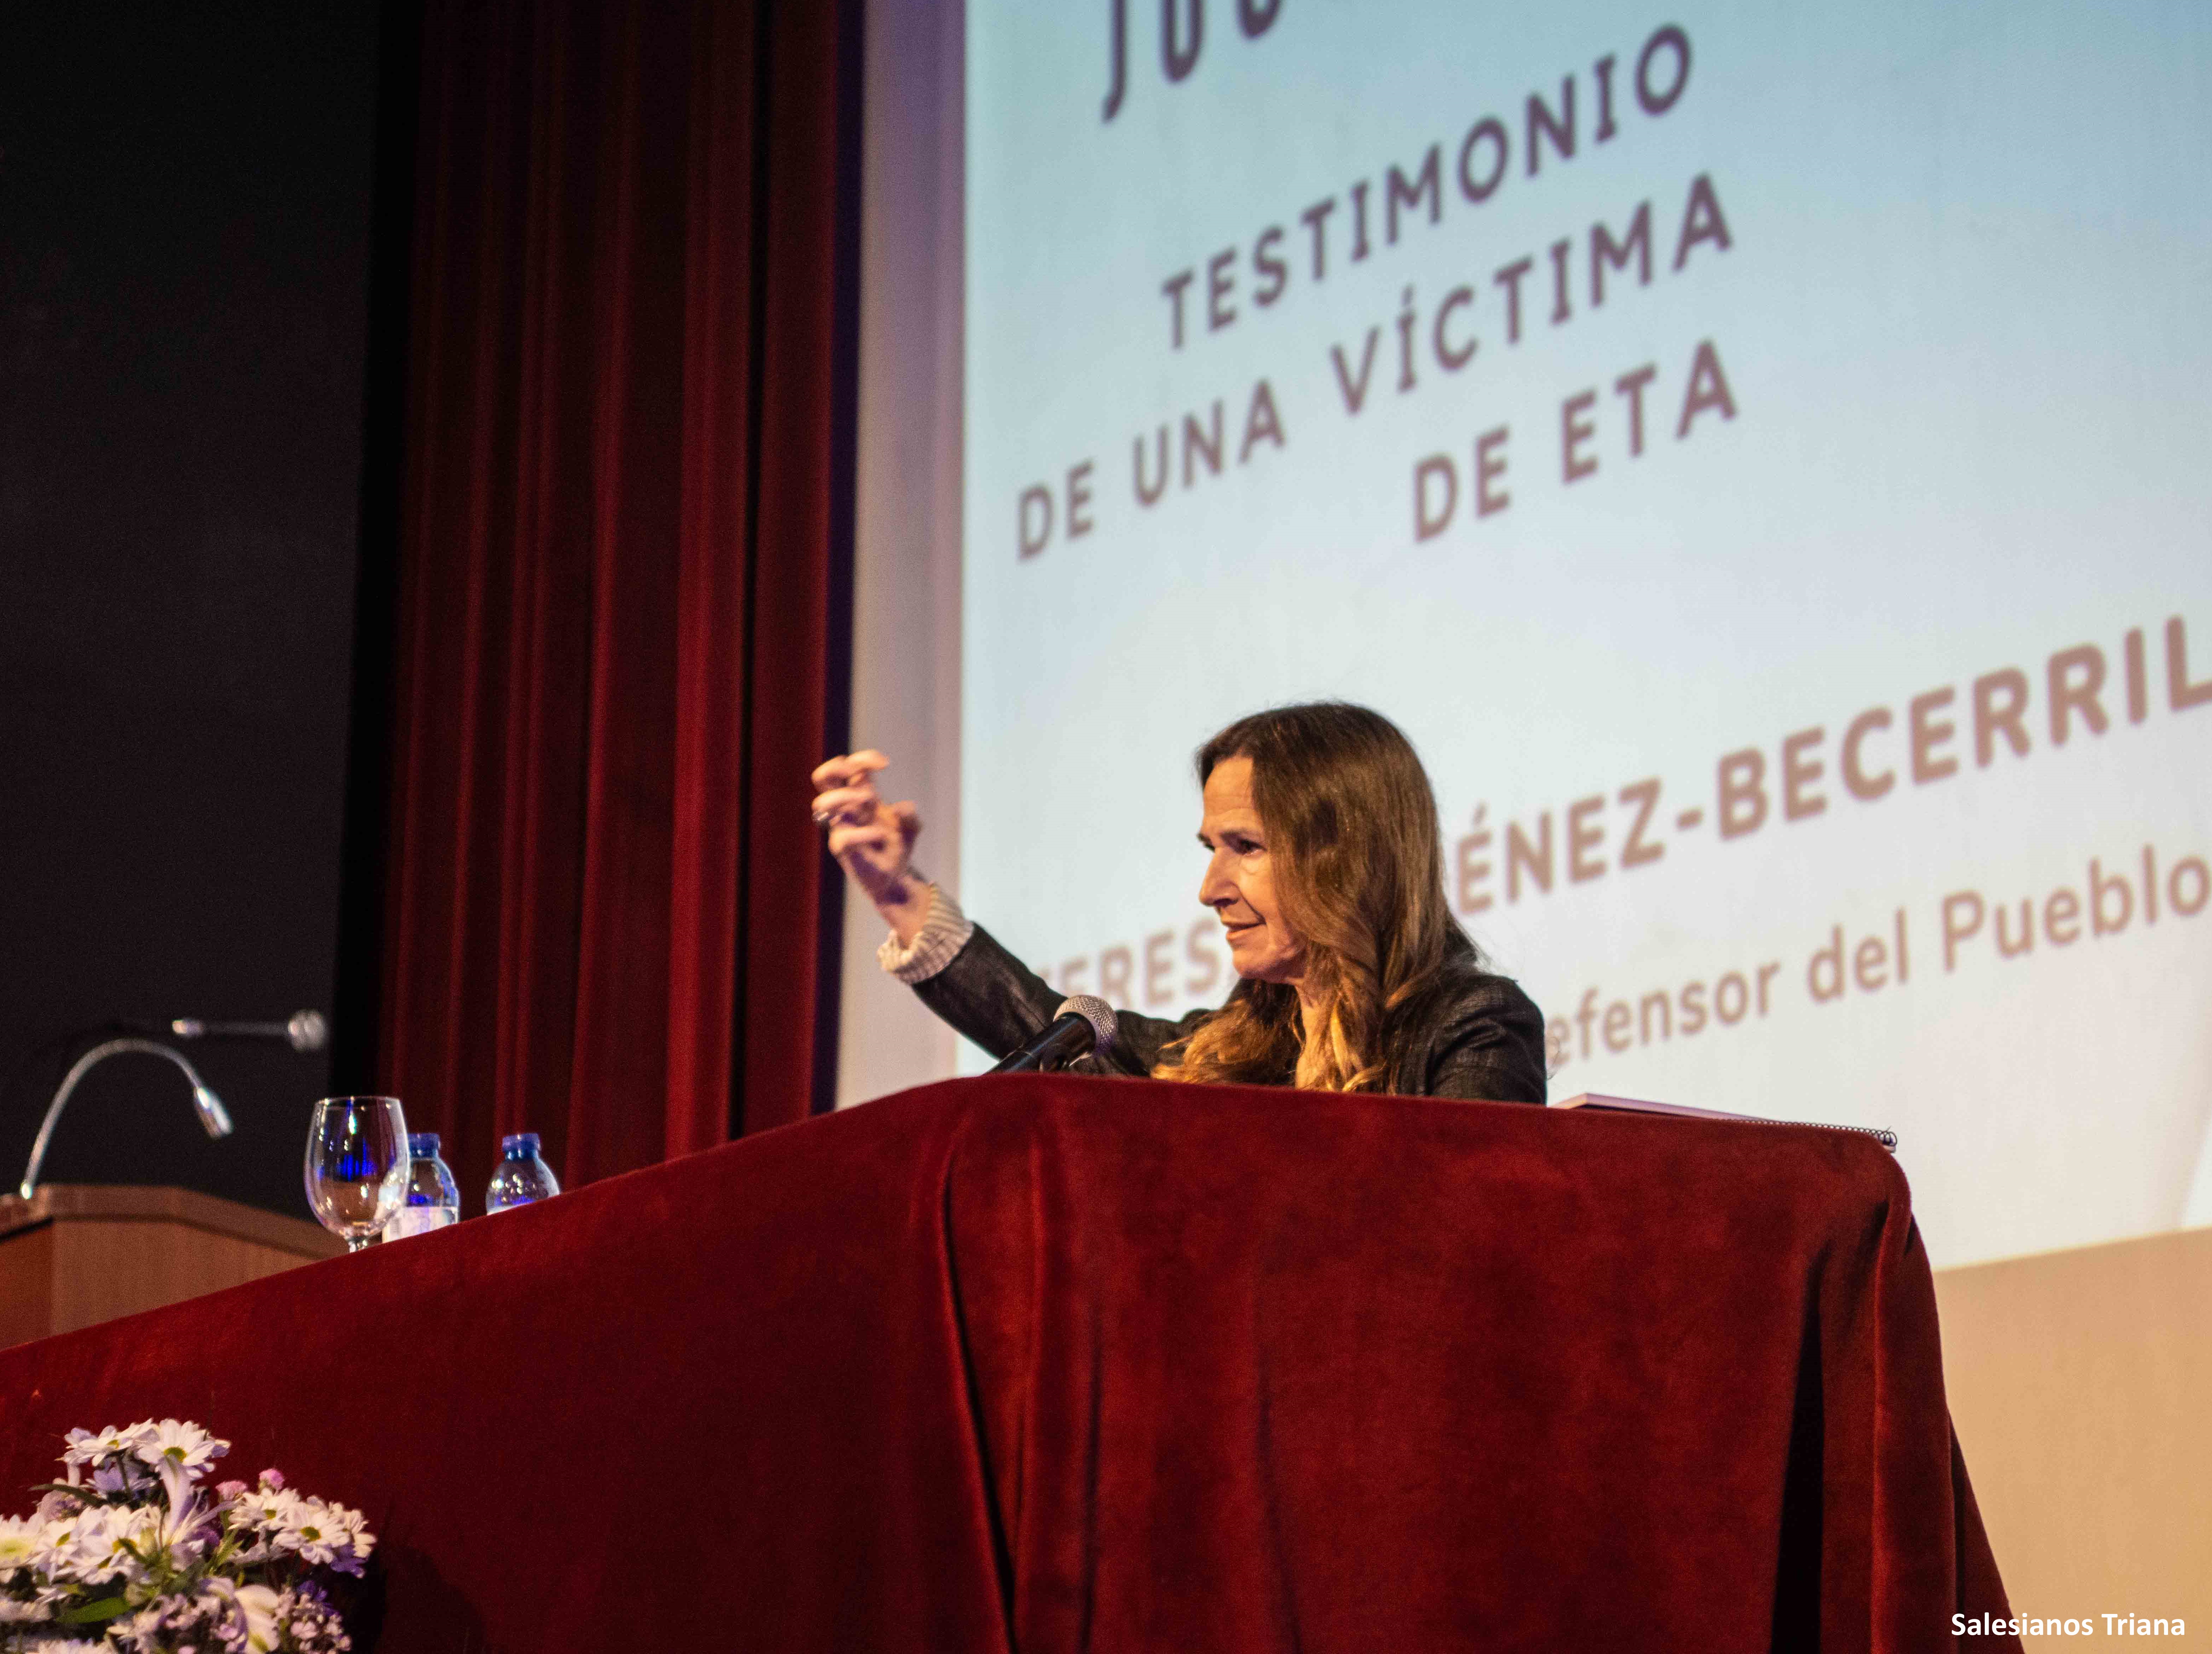 La adjunta primera del Defensor del Pueblo, Teresa Jiménez-Becerril imparte una conferencia en el Colegio Salesianos de Triana en Sevilla